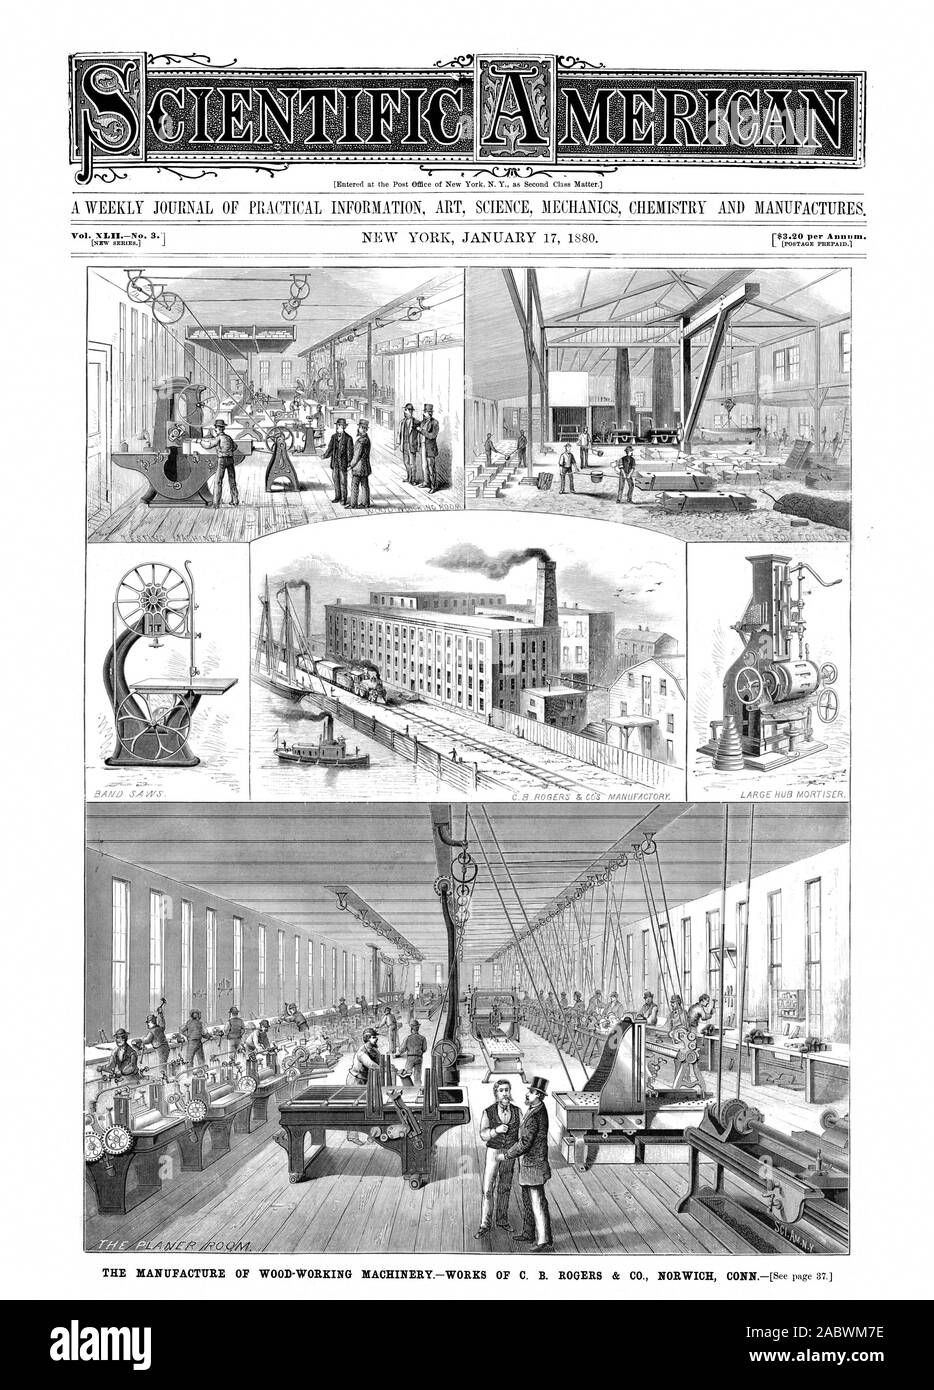 Vol. XLIINo. 3.1, scientific american, 1880-01-17 Stock Photo